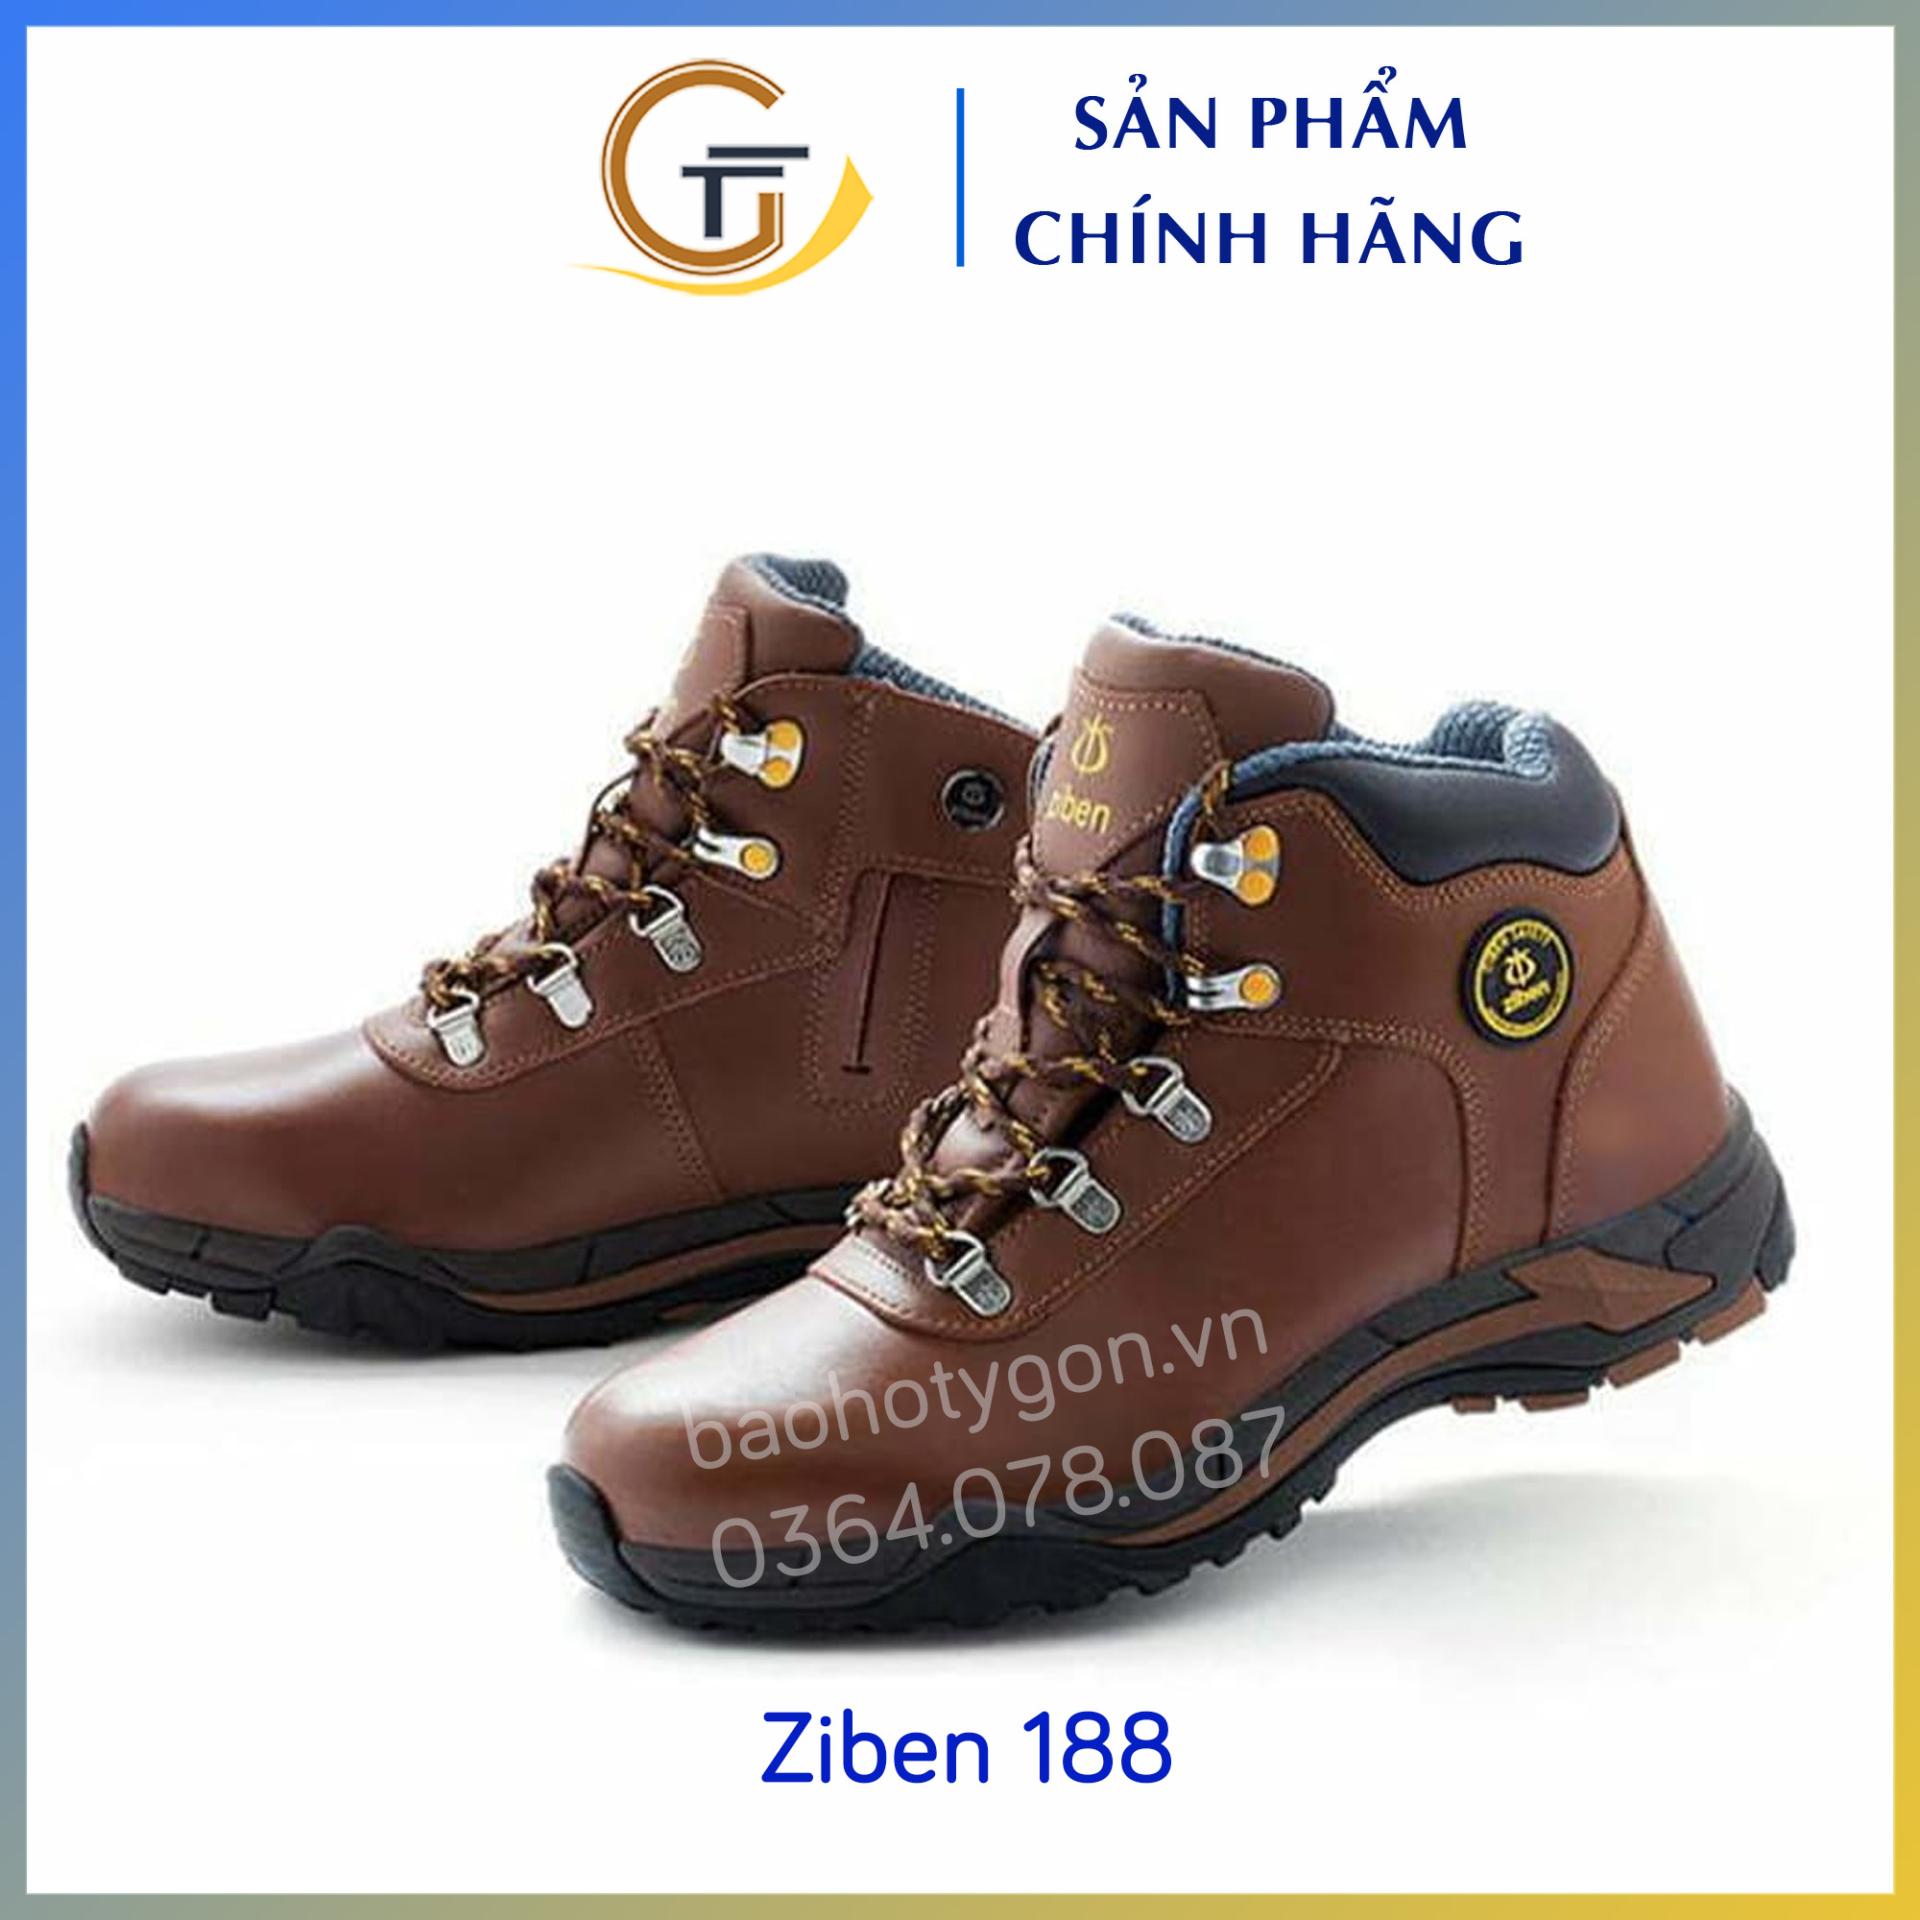 Giày bảo hộ cao cấp Ziben 188 - Bảo Hộ Lao Động Ty Gôn - Công ty TNHH An Toàn Lao Động Ty Gôn